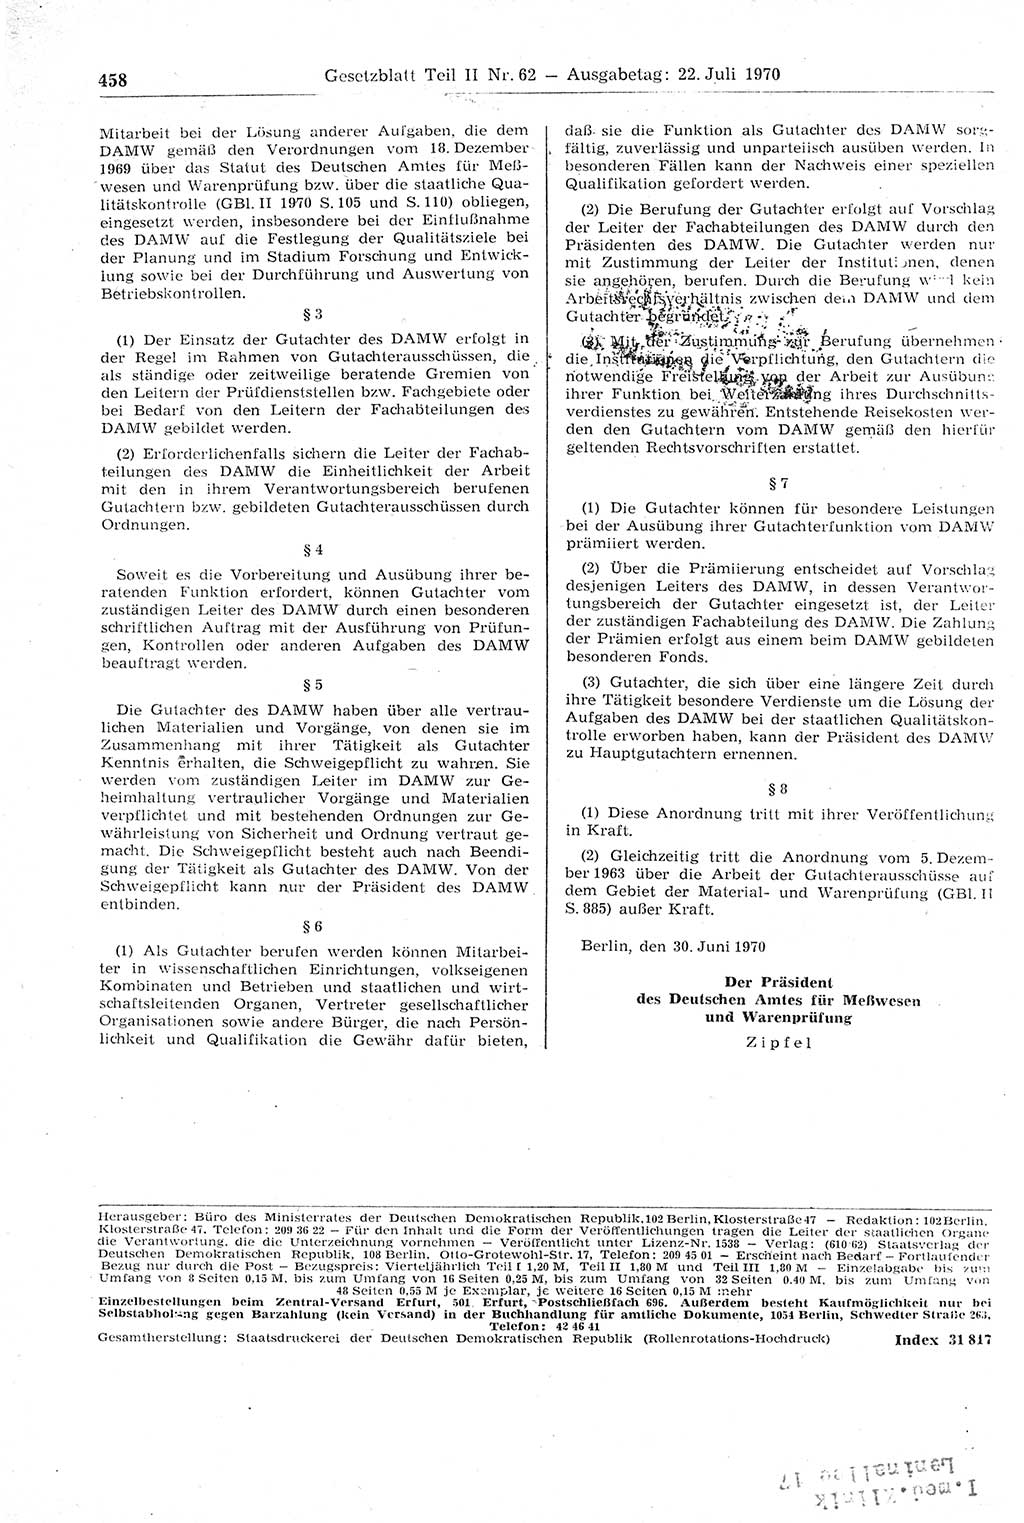 Gesetzblatt (GBl.) der Deutschen Demokratischen Republik (DDR) Teil ⅠⅠ 1970, Seite 458 (GBl. DDR ⅠⅠ 1970, S. 458)